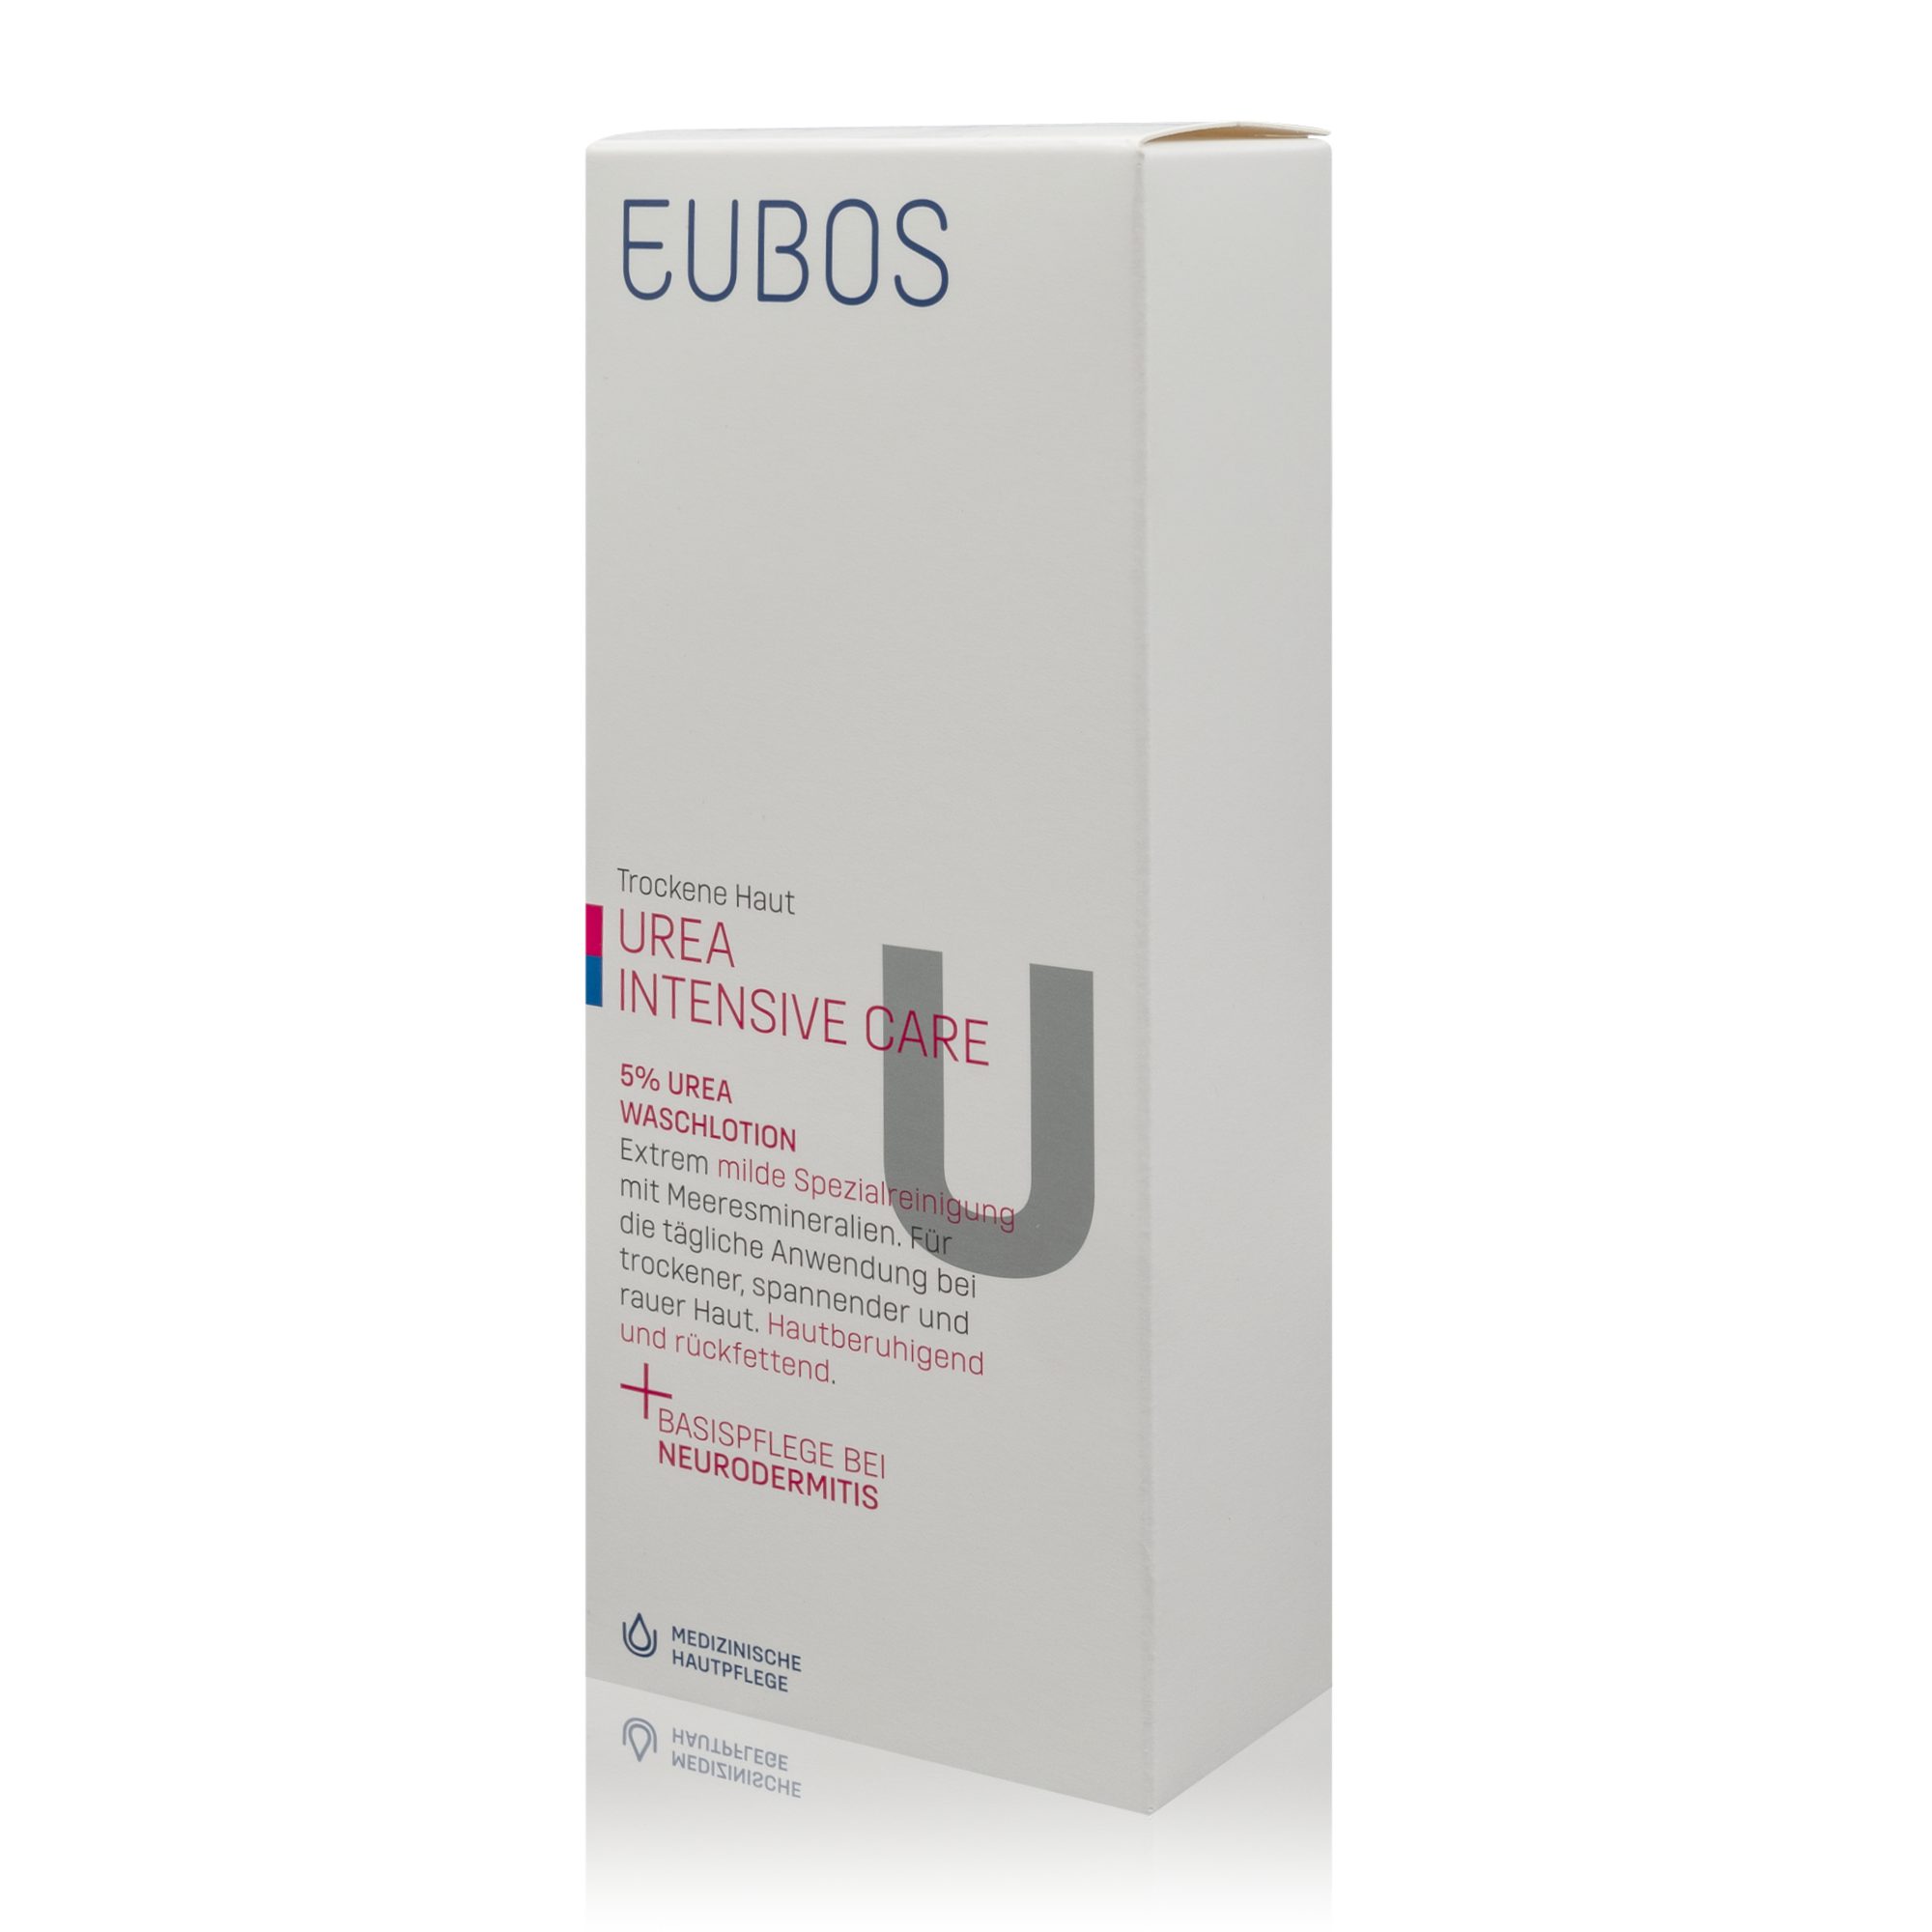 EUBOS Hautreinigungs-Set Eubos Trockene Haut Urea Intensive Care - 5% Urea Waschlotion (200ml) | Hautpflegesets